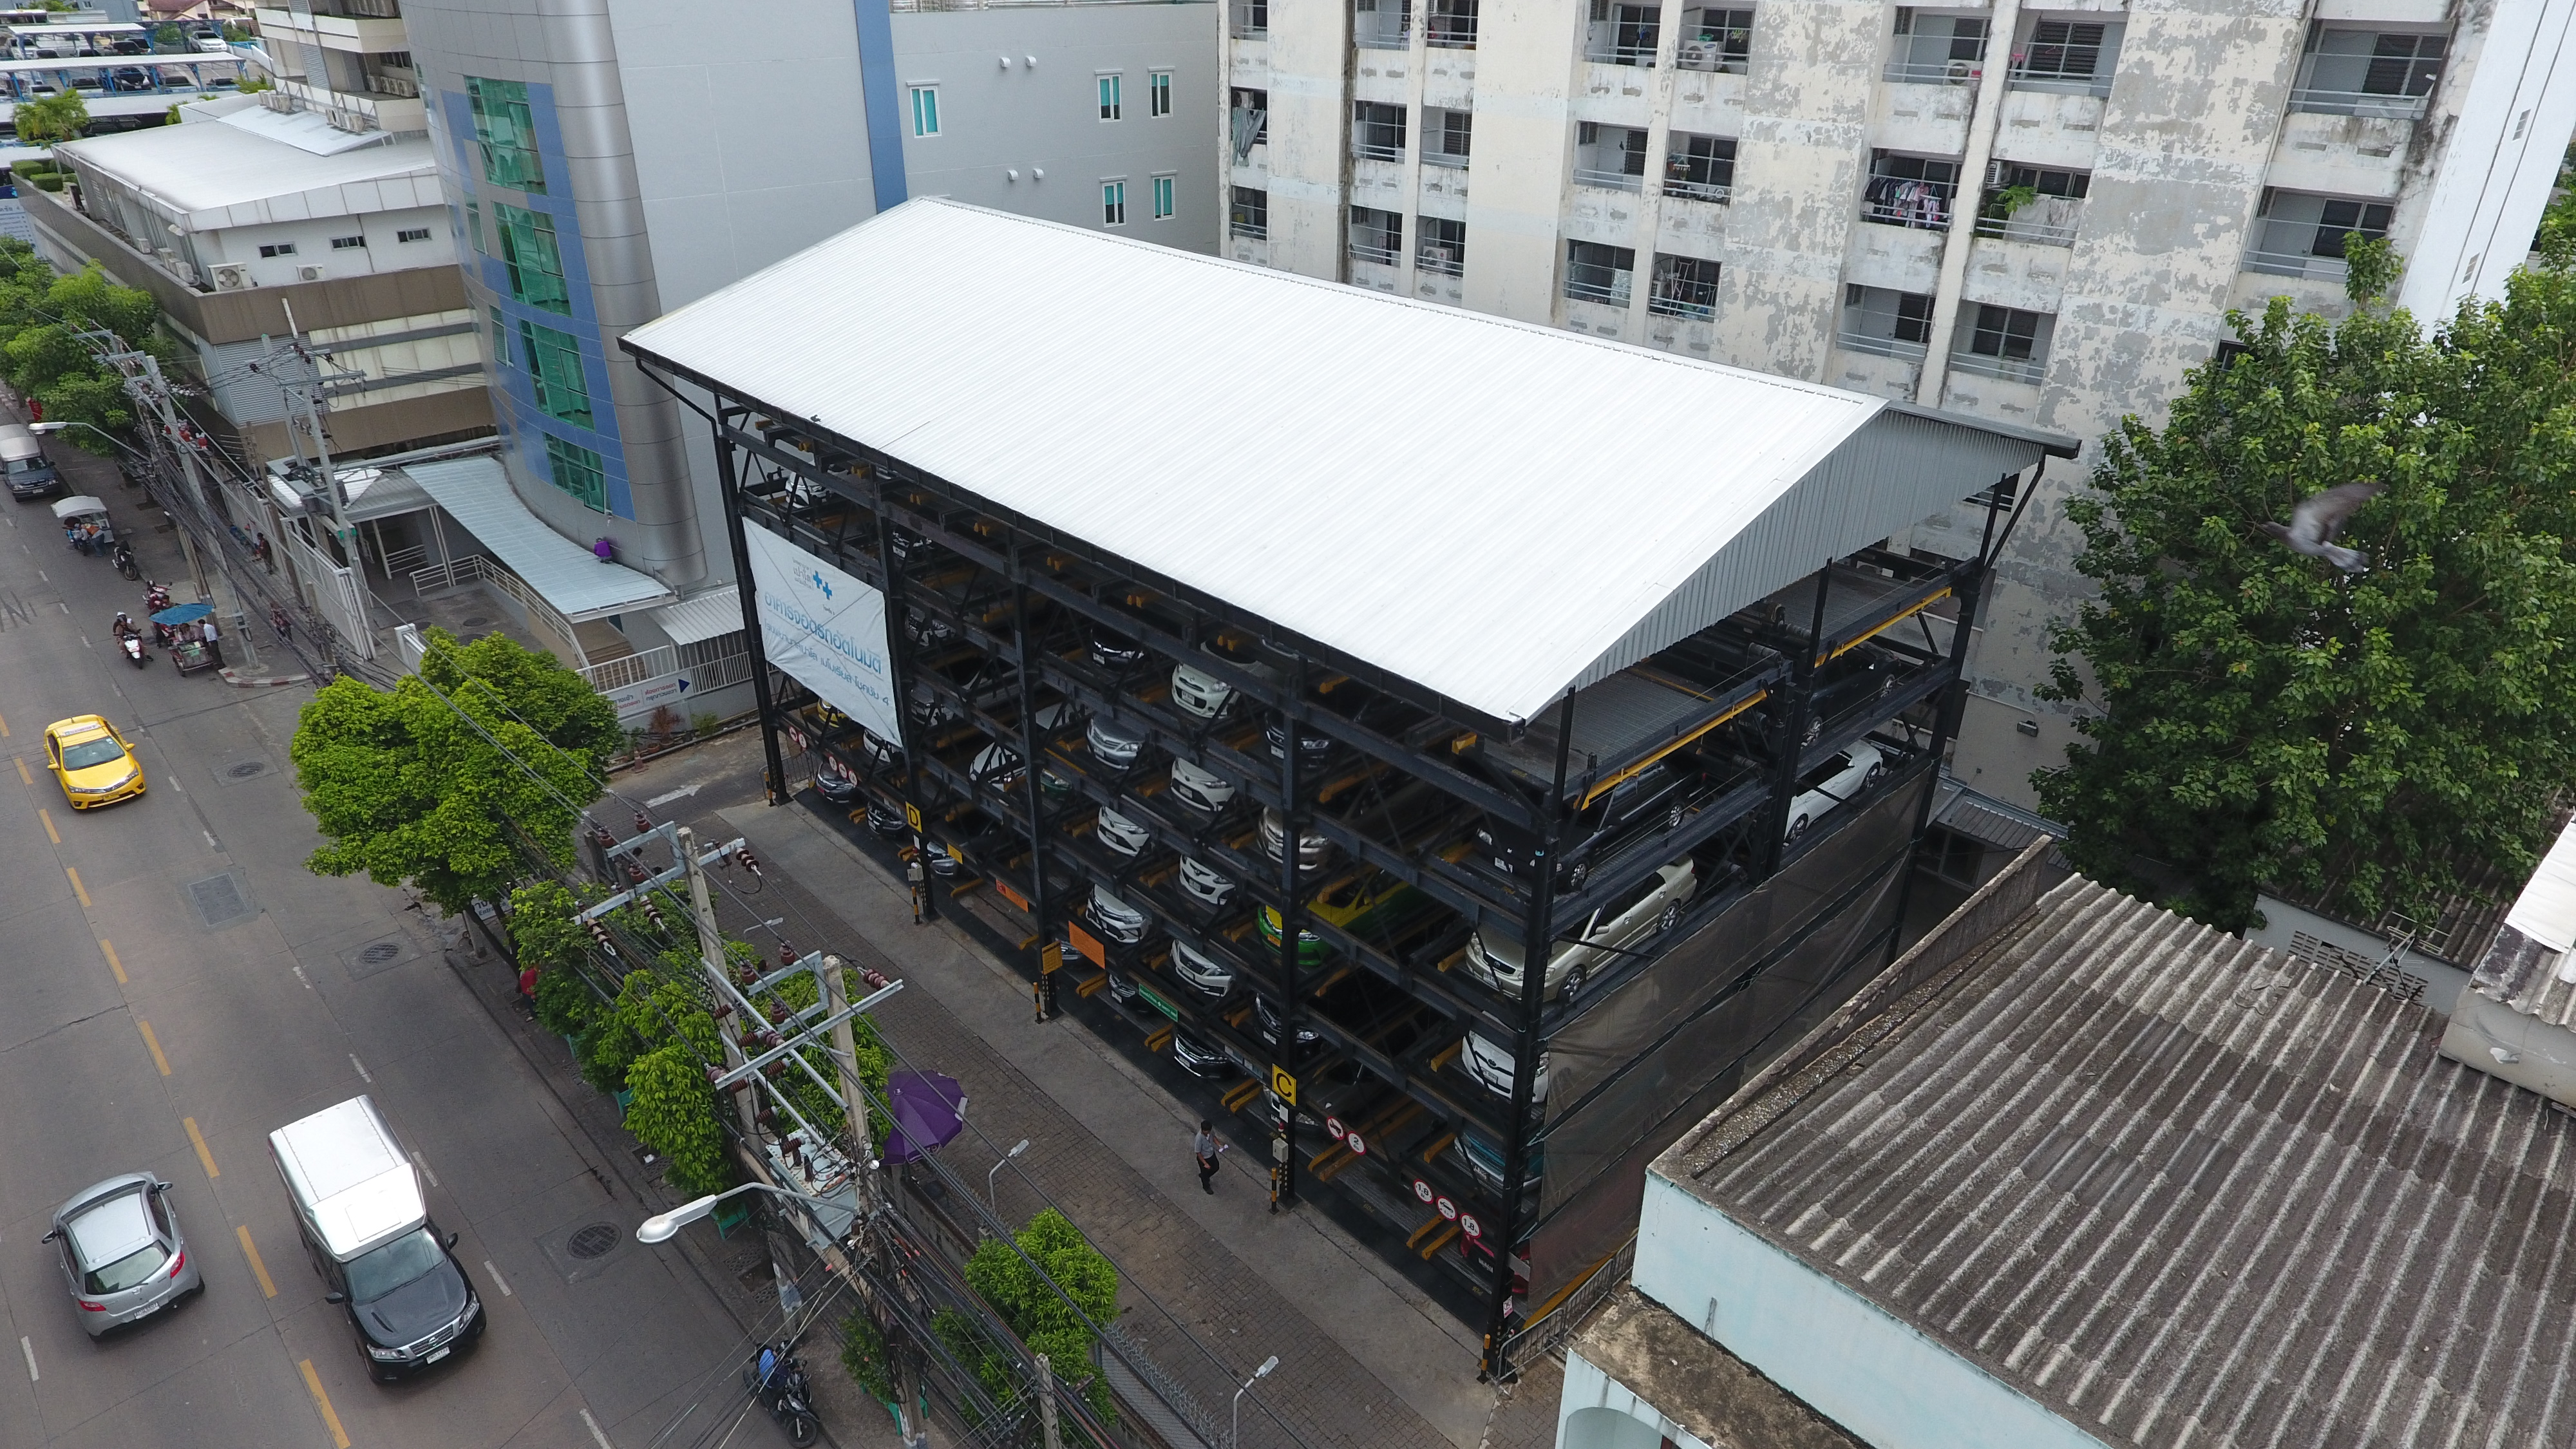 ครบรอบ 4 ปี ของการใช้งานและบำรุงรักษา อาคารจอดรถด้วยเครื่องจักรกลอัตโนมัติ G-07 GPP Puzzle Parking จำนวน 100 คัน อาคารแรกของประเทศไทย รพ.เปาโล เมโมเรียล โชคชัย 4